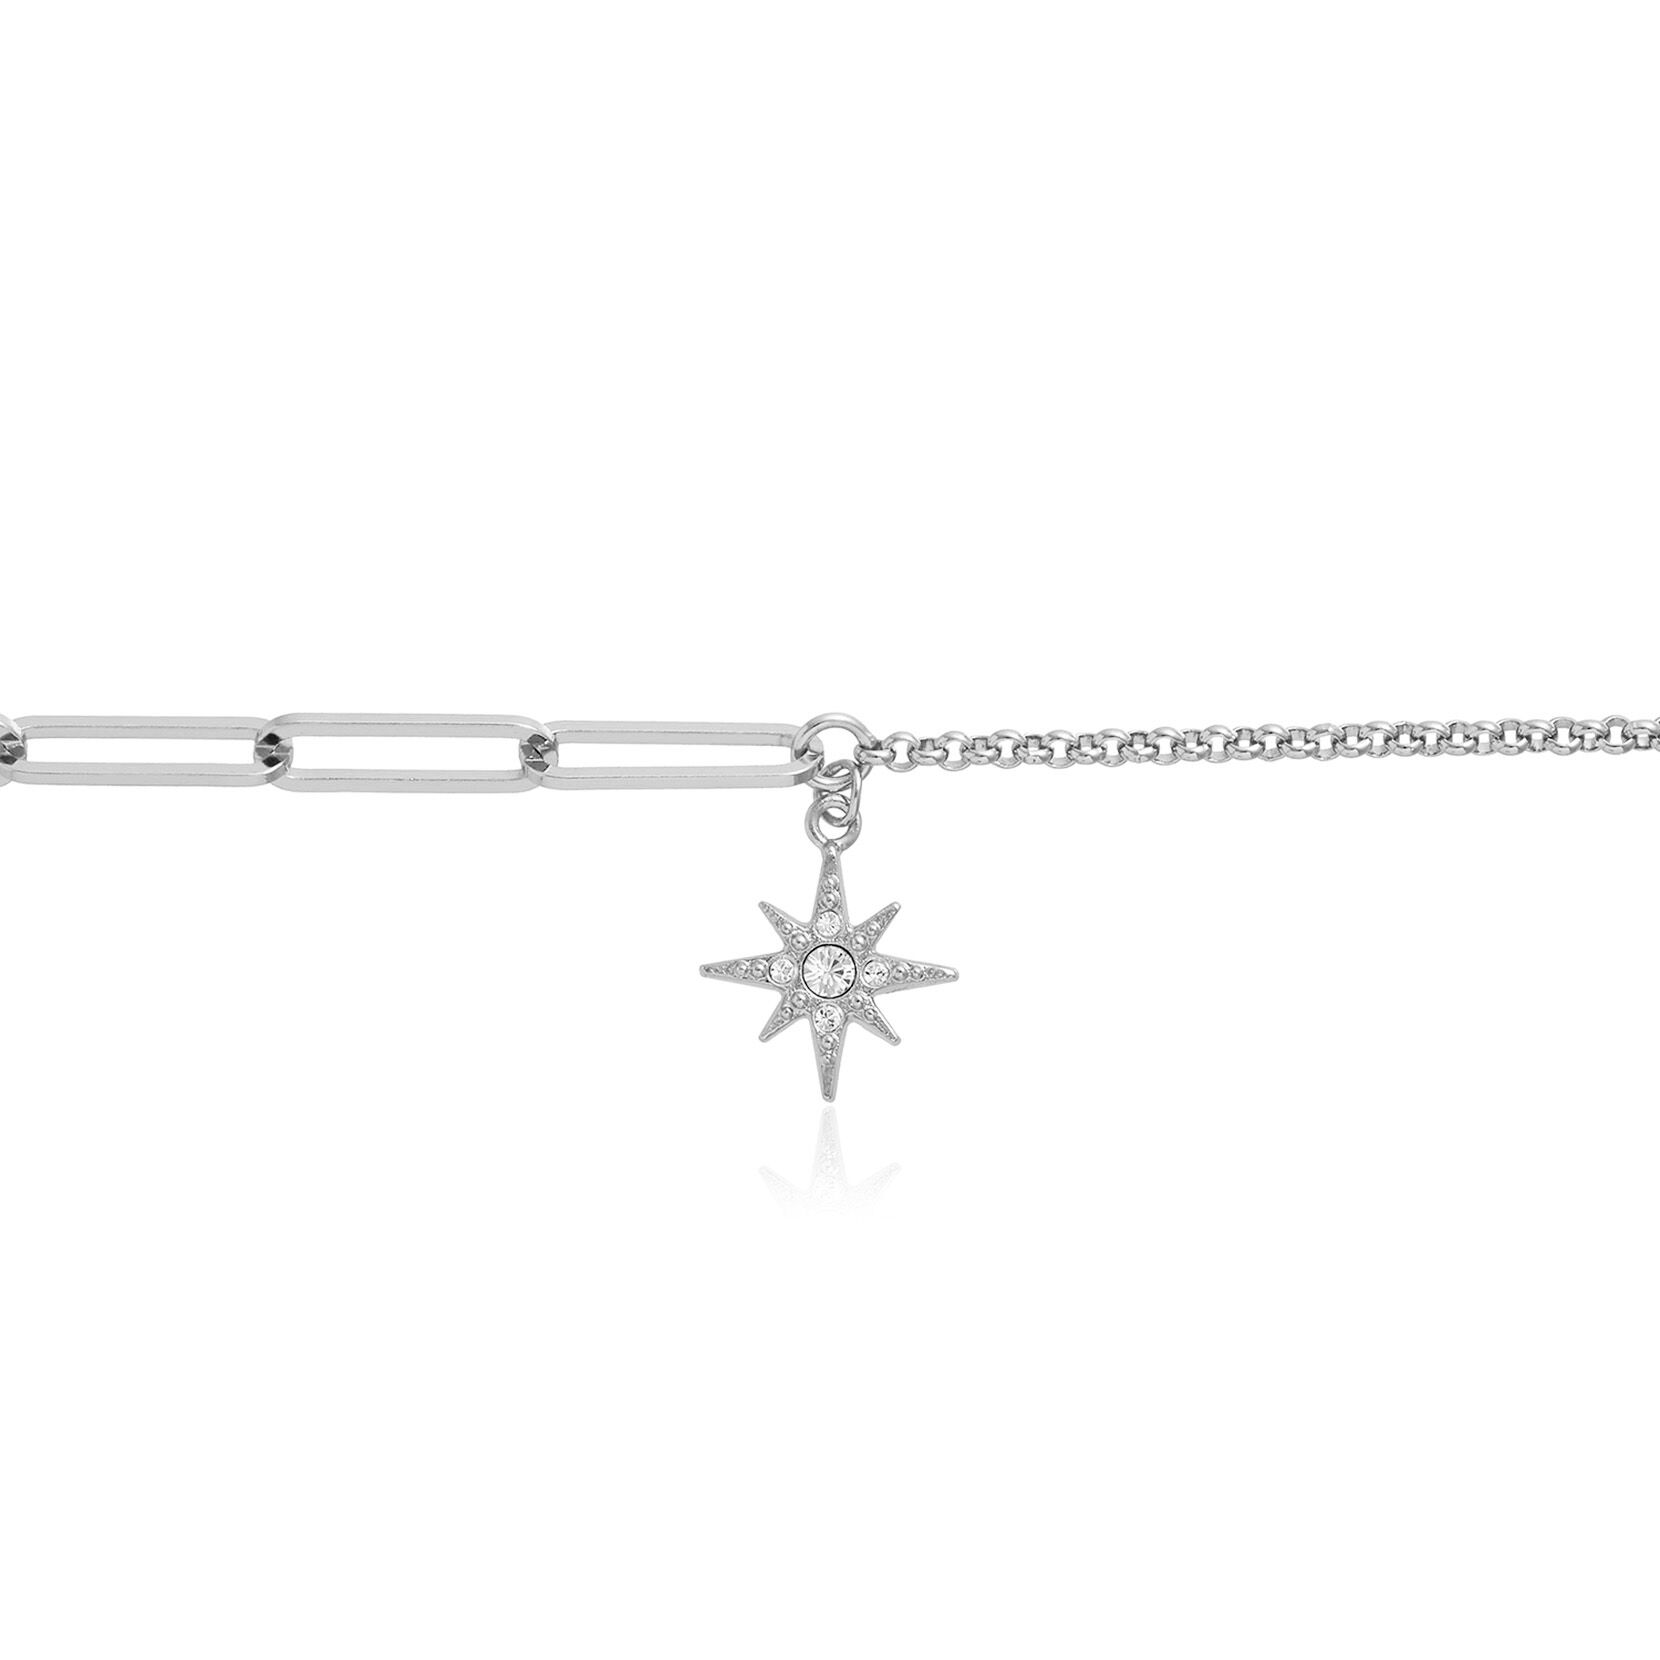 Celestial Silver North Star Mismatch Bracelet